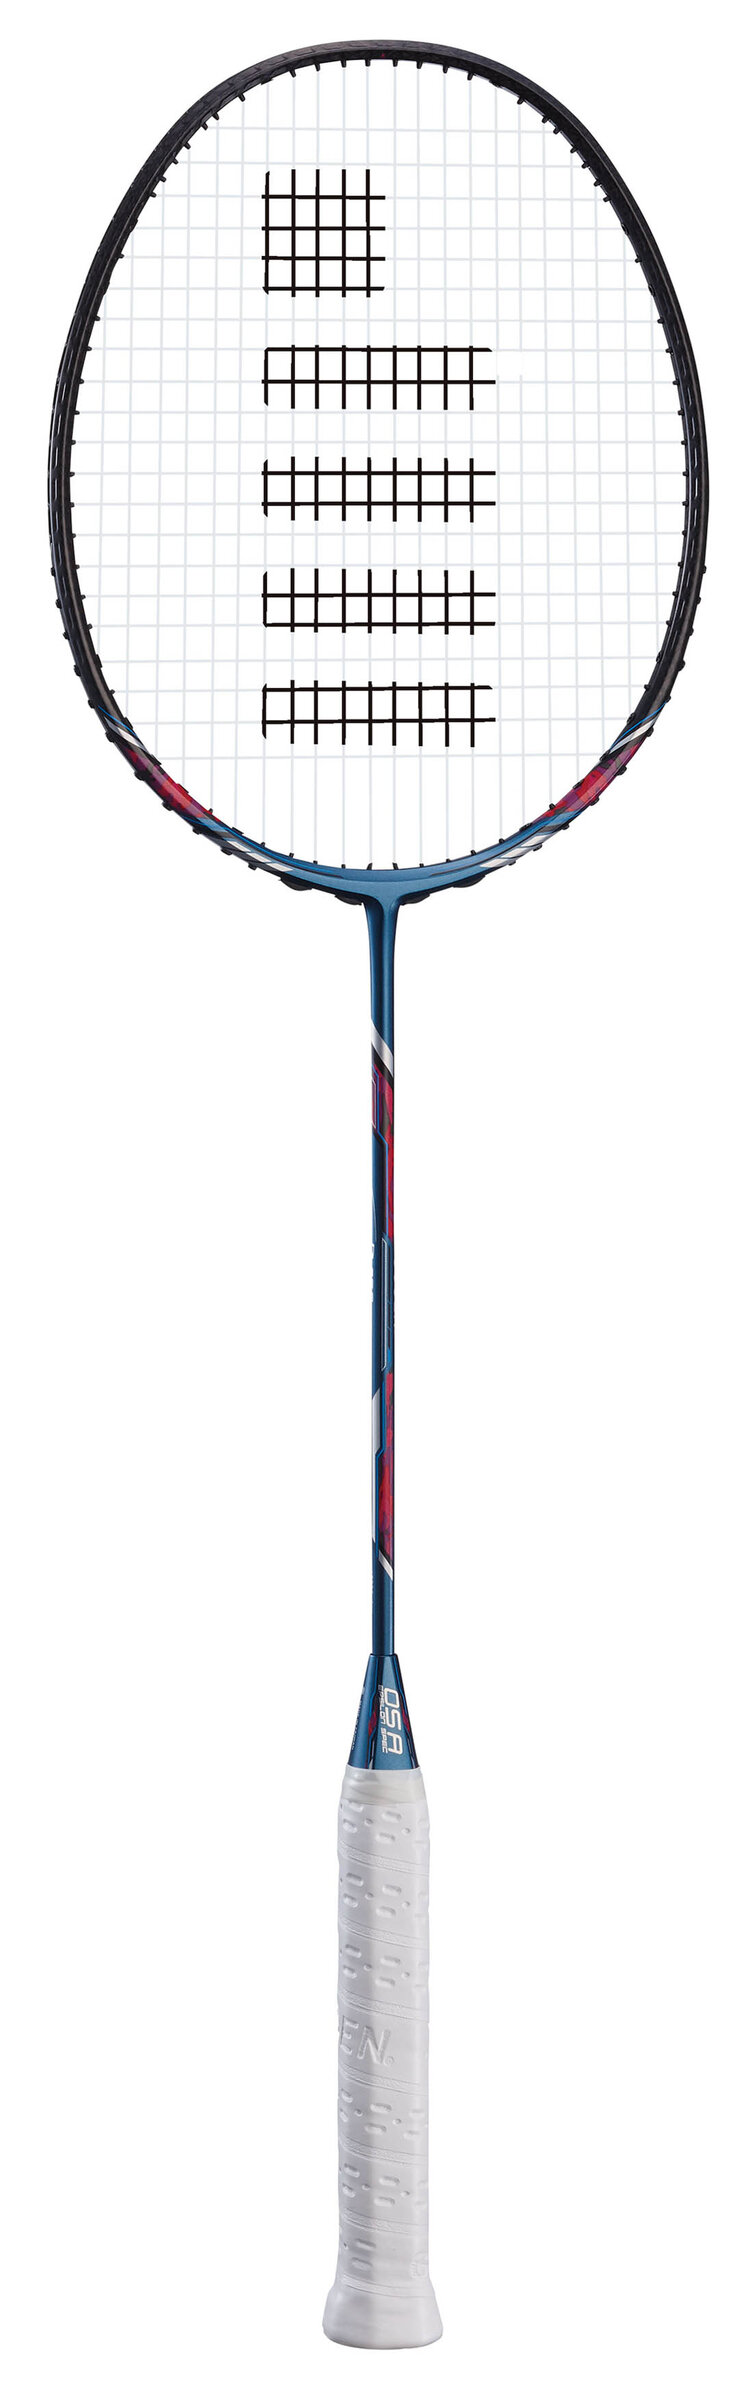 Gosen racket model GUNGNIR 05A